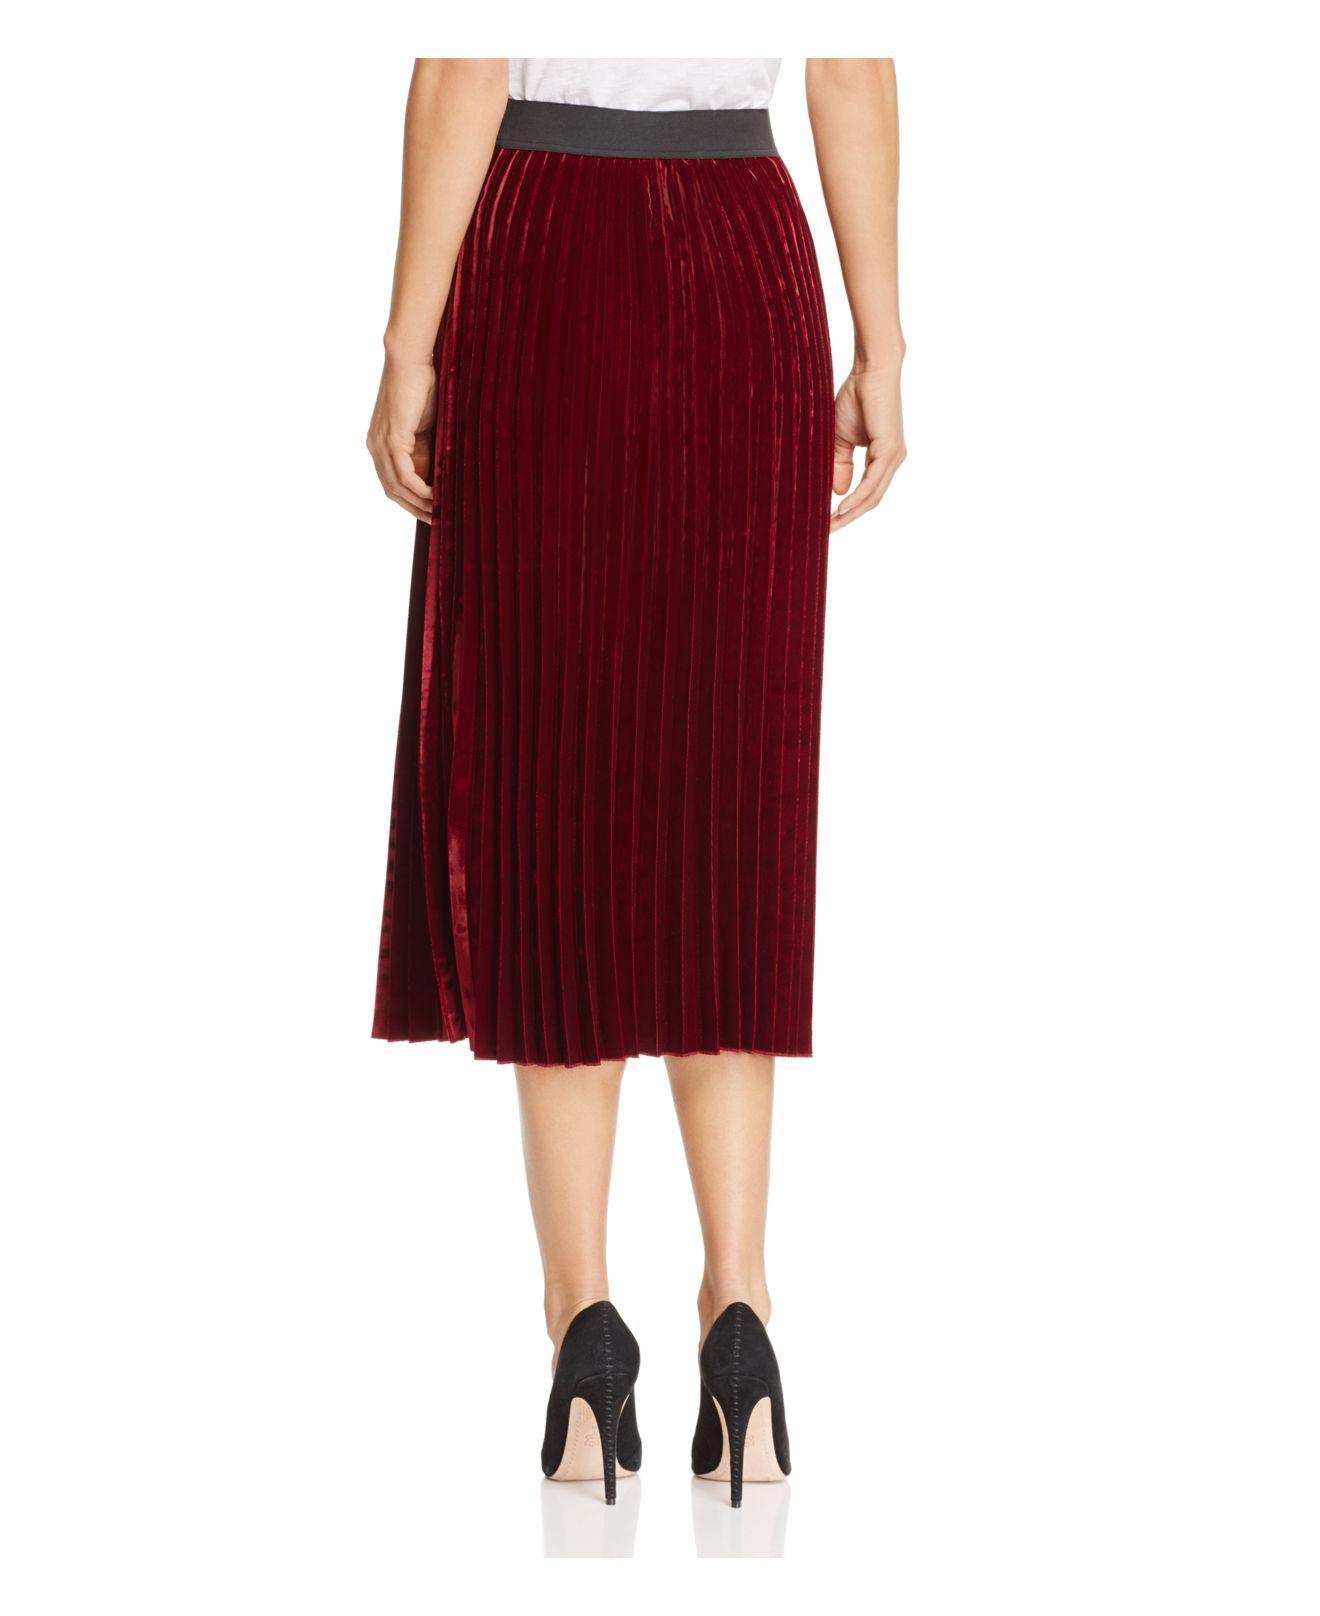 Maje Pleated Velvet Skirt in Burgundy (Red) - Lyst